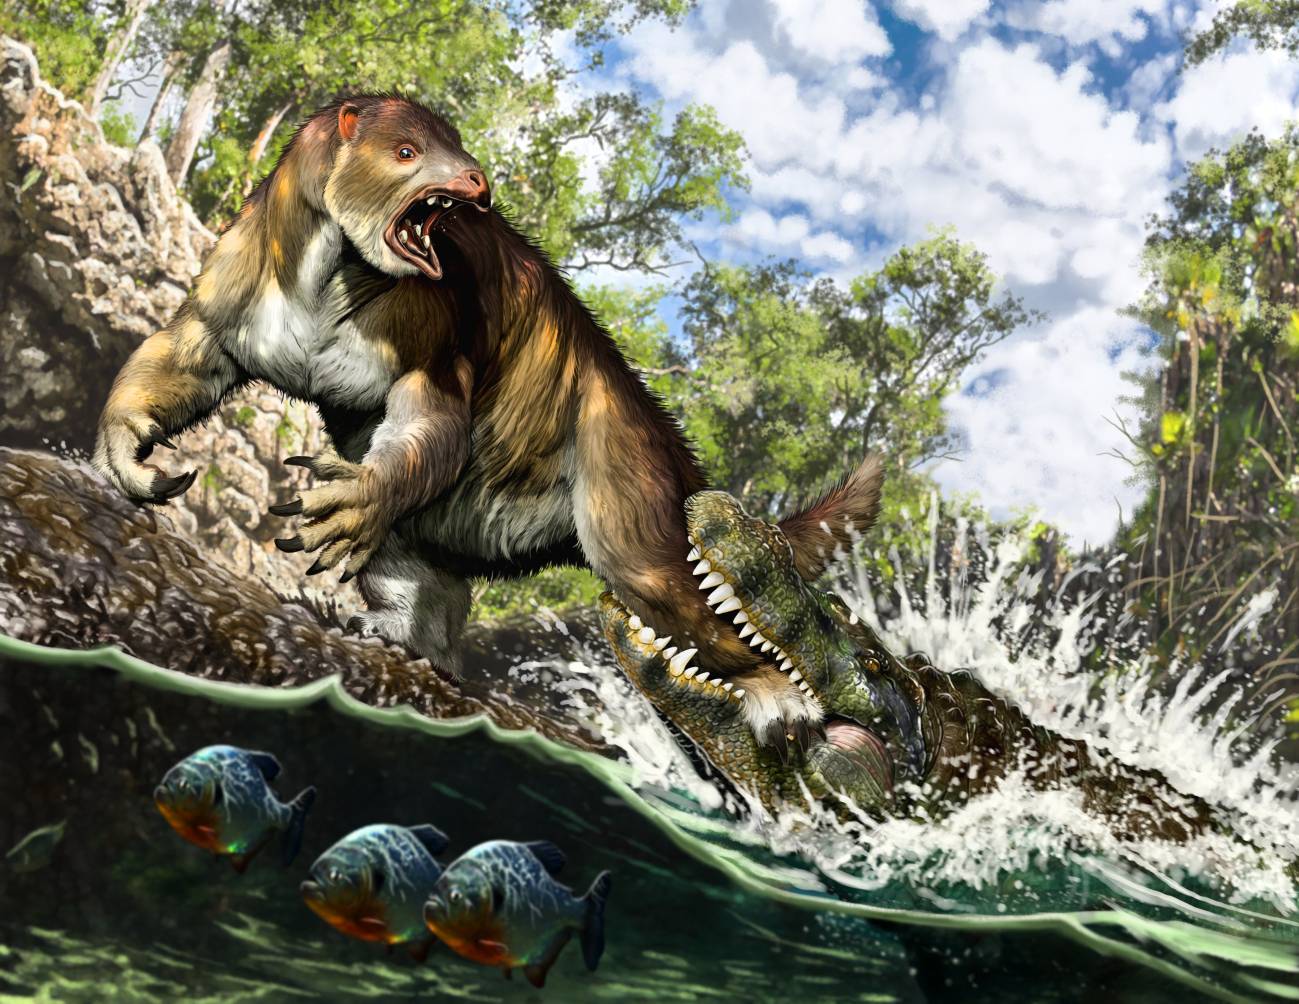 El caimán devoró al perezoso: cómo un fósil olvidado resolvió un 'crimen'  de hace 13 millones de años